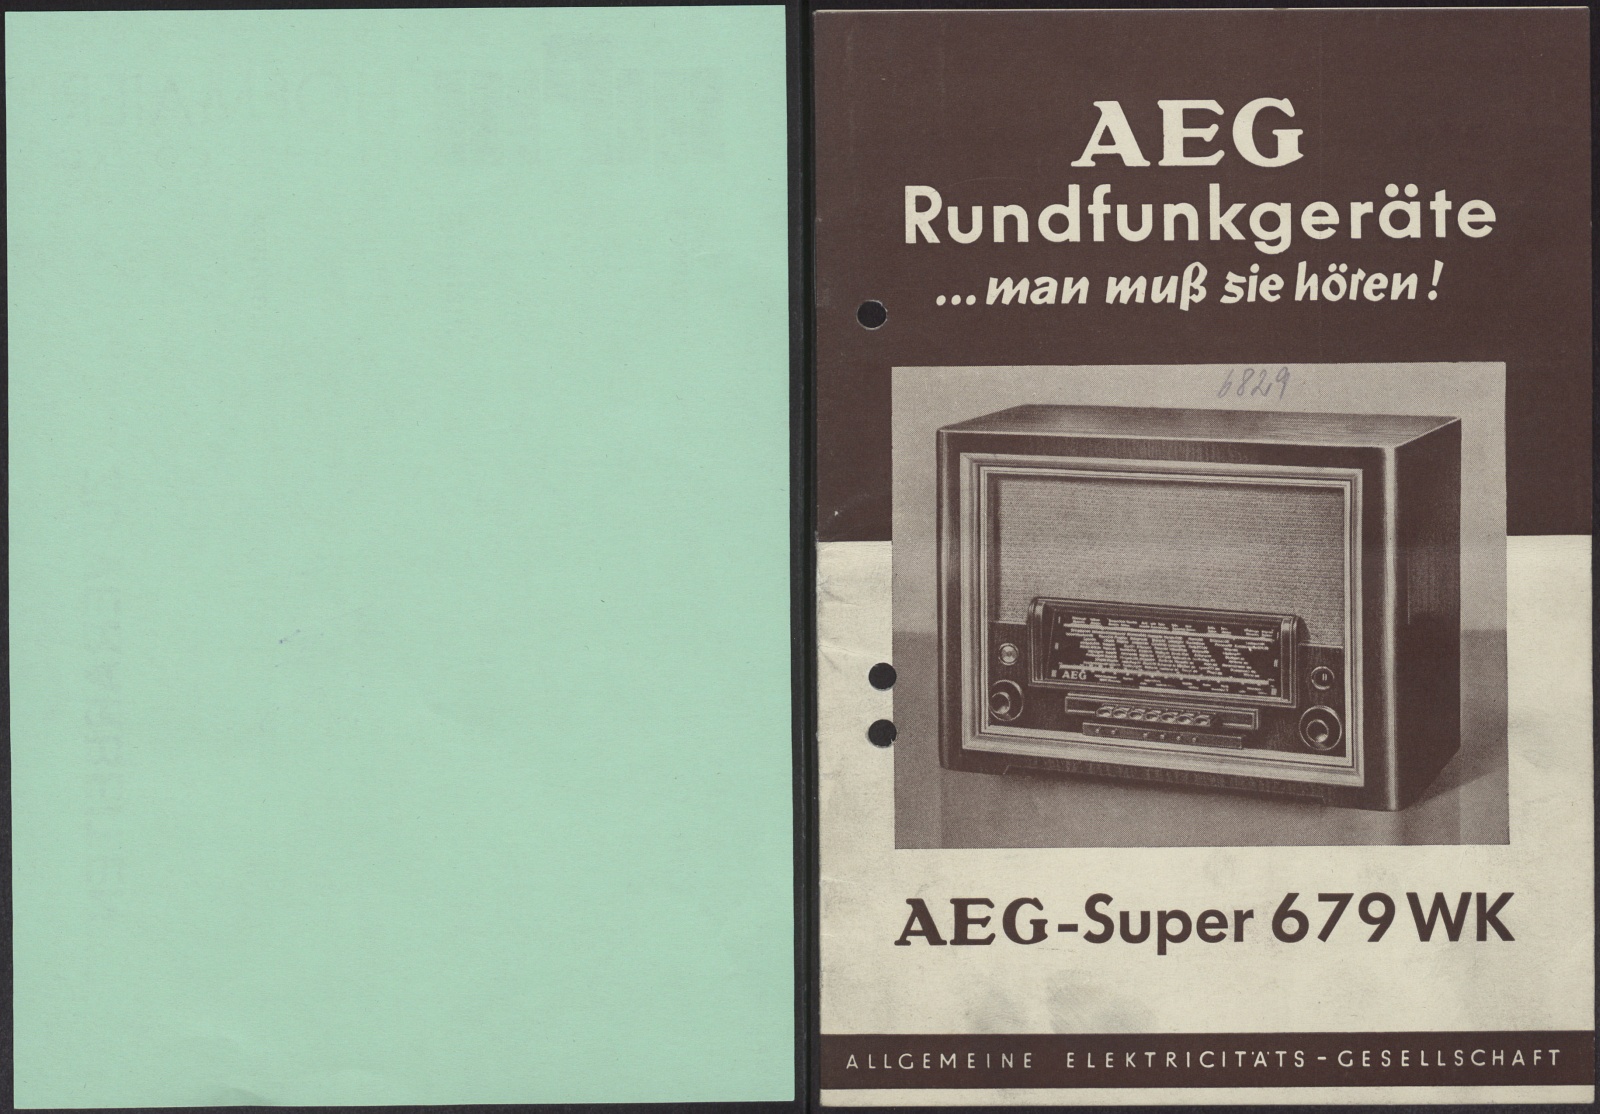 Bedienungsanleitung: AEG Rundfunkgeräte ... man muß sie hören! AEG-Super 679 WK (Stiftung Deutsches Technikmuseum Berlin CC0)